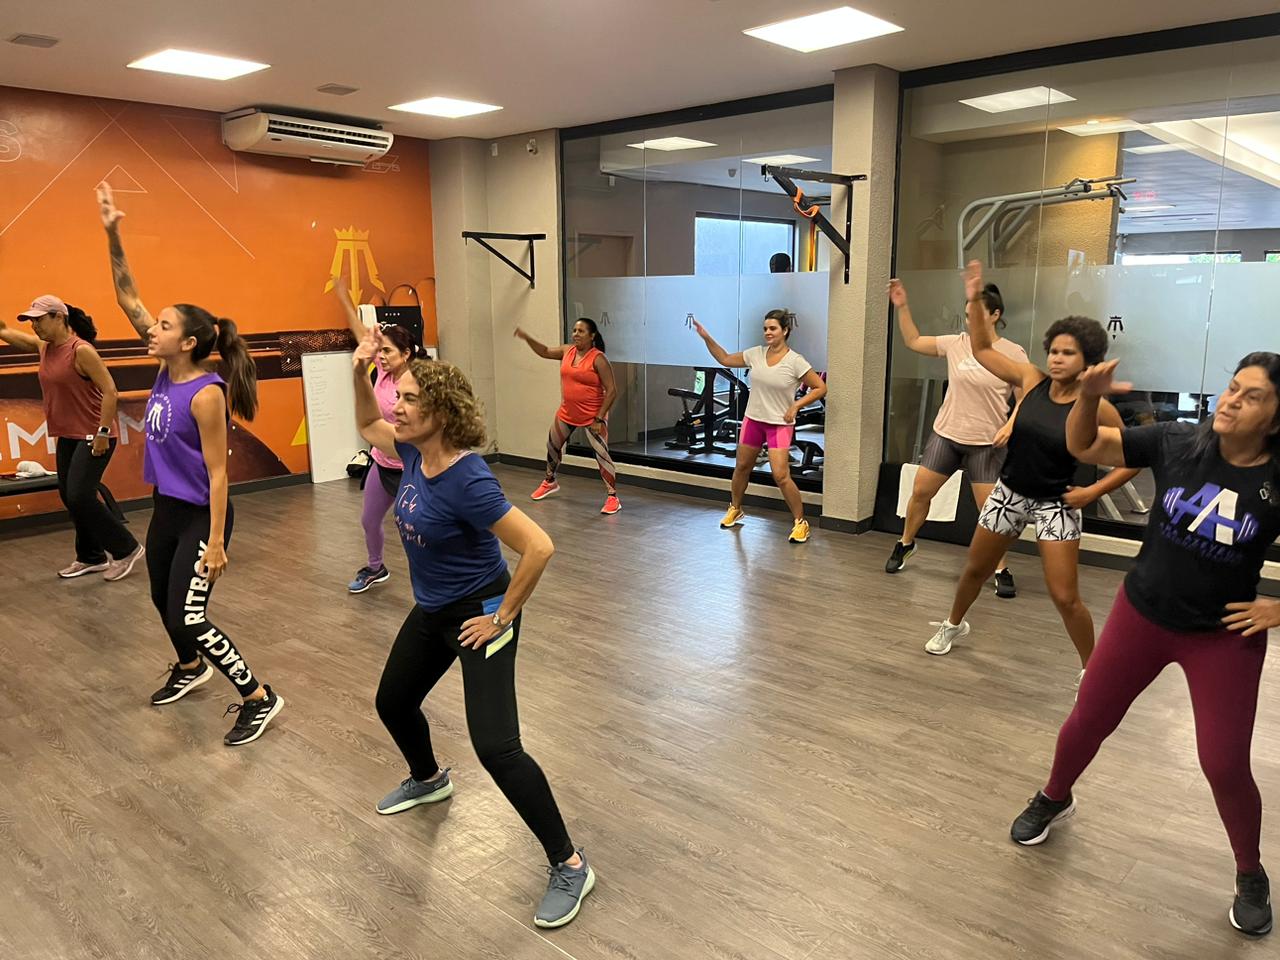  RITBOX |  Modalidade Prem1um Fitness | Academia em Maceió | O seu espaço fitness e wellness em Maceió